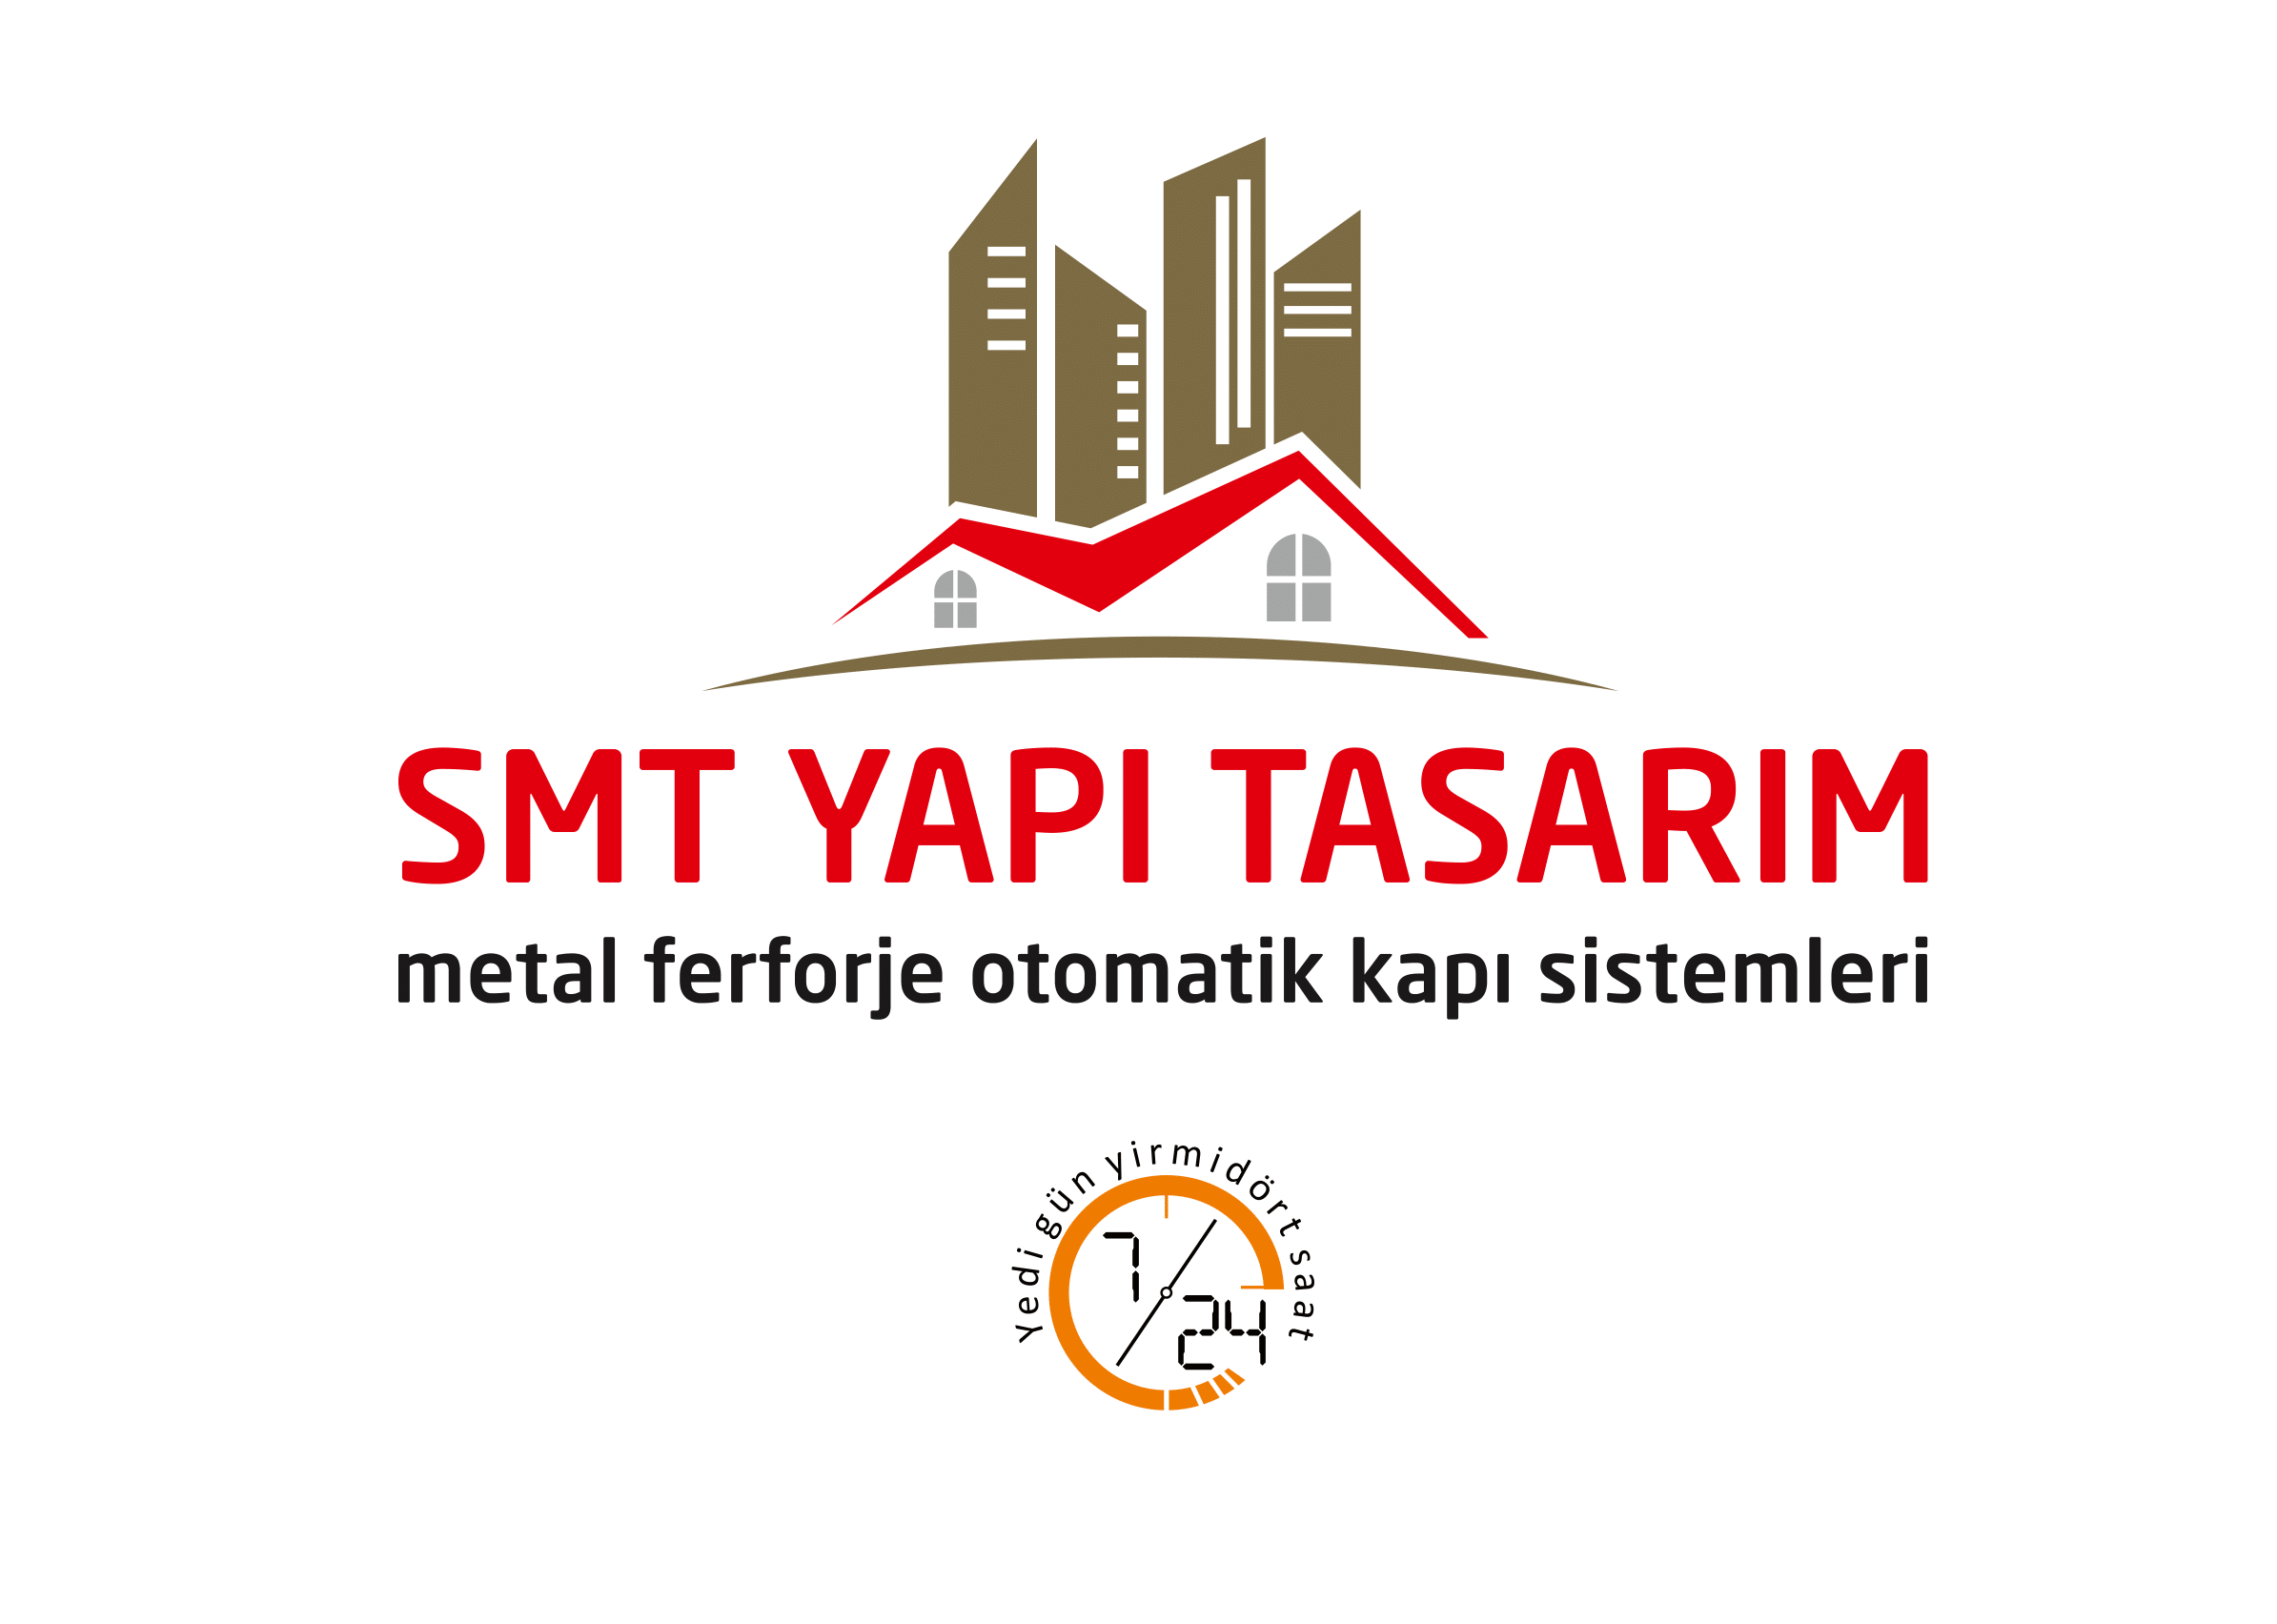 Smt Yapı tasarım logo